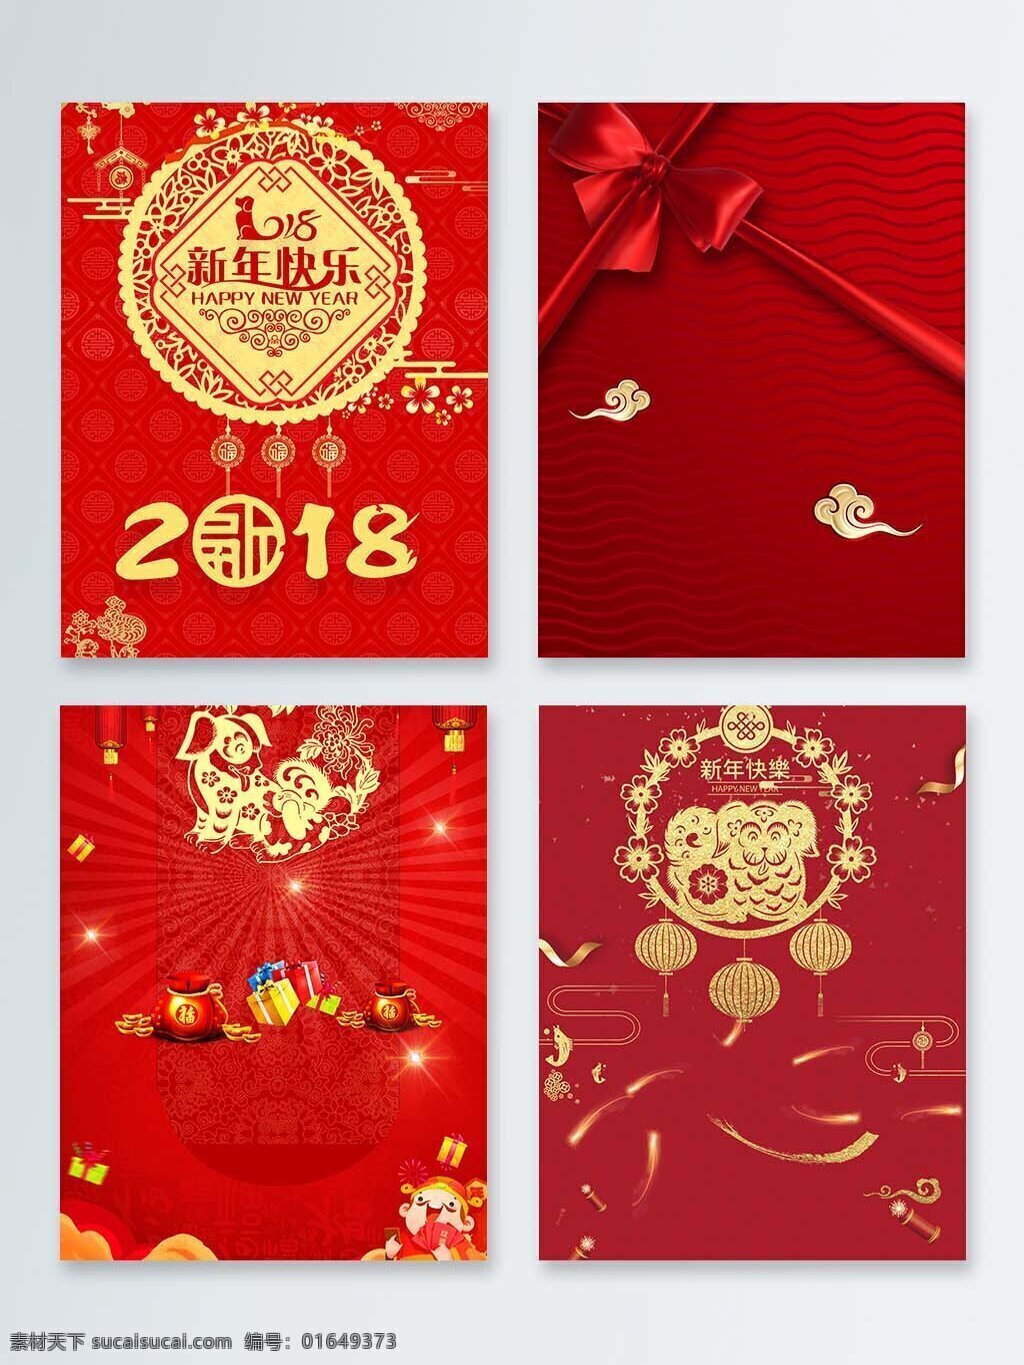 新春 喜庆 红色 背景 图 背景图 春节 狗年 欢乐 新年 装饰